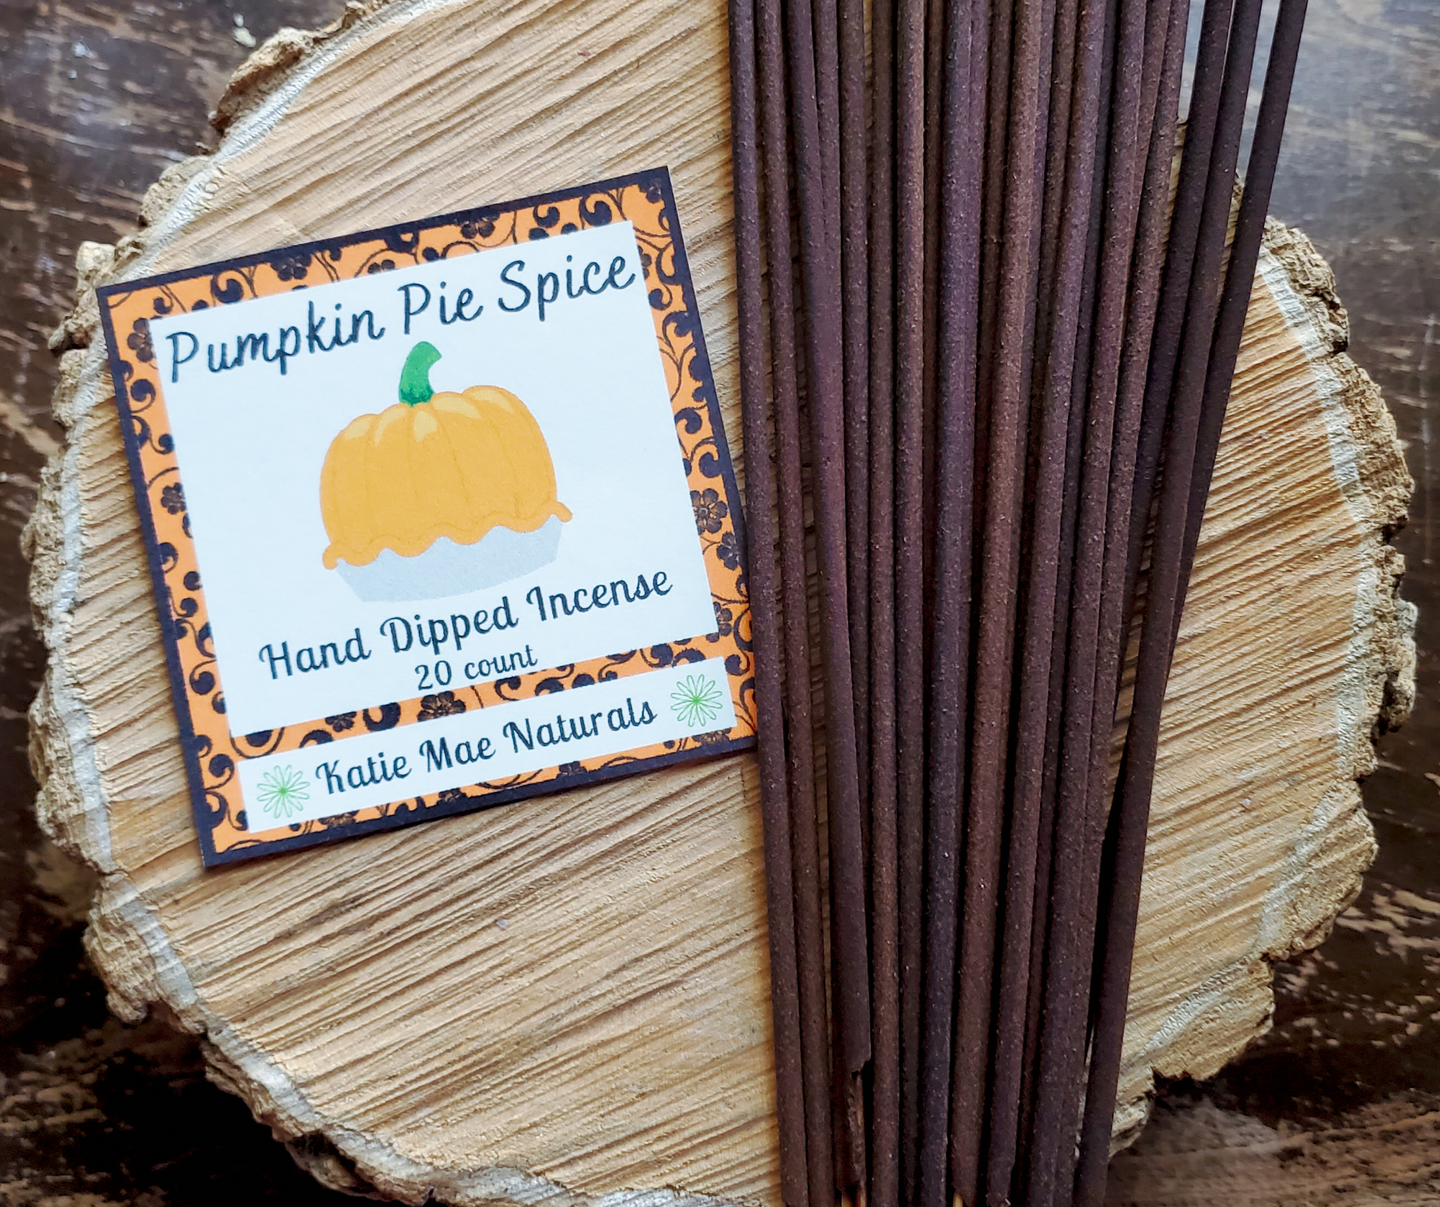 Pumpkin Pie Spice Incense Sticks